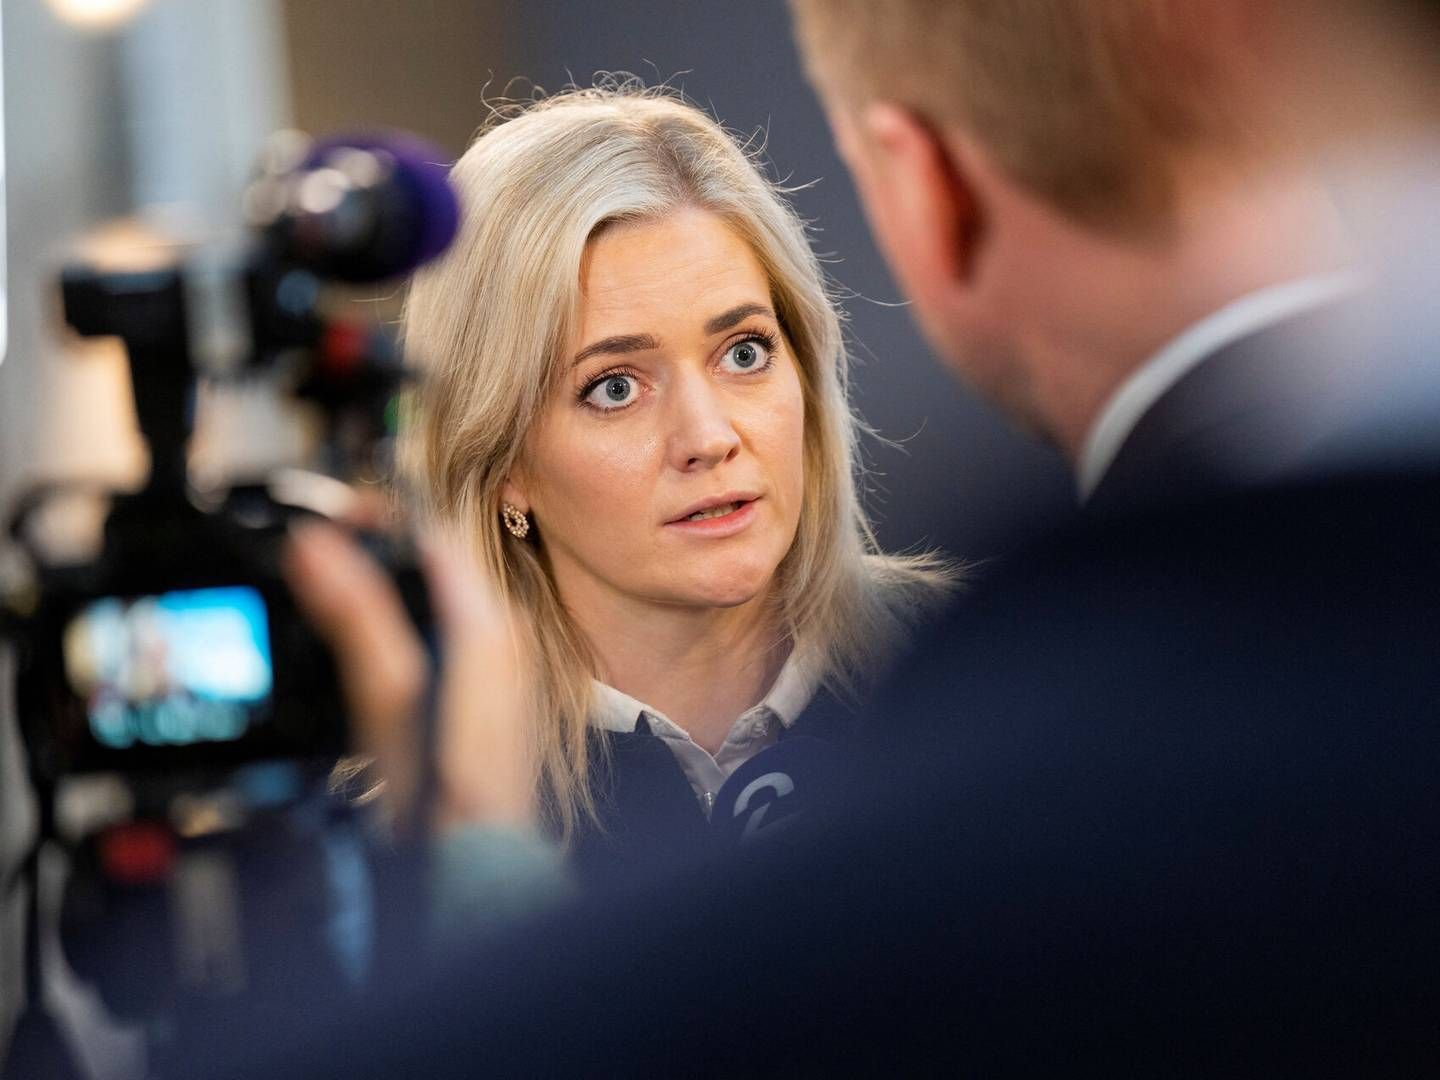 Justitsminister i Norge Emilie Enger Mehl har set dokumentaren "Den sorte svane". | Foto: Ntb/Reuters/Ritzau Scanpix